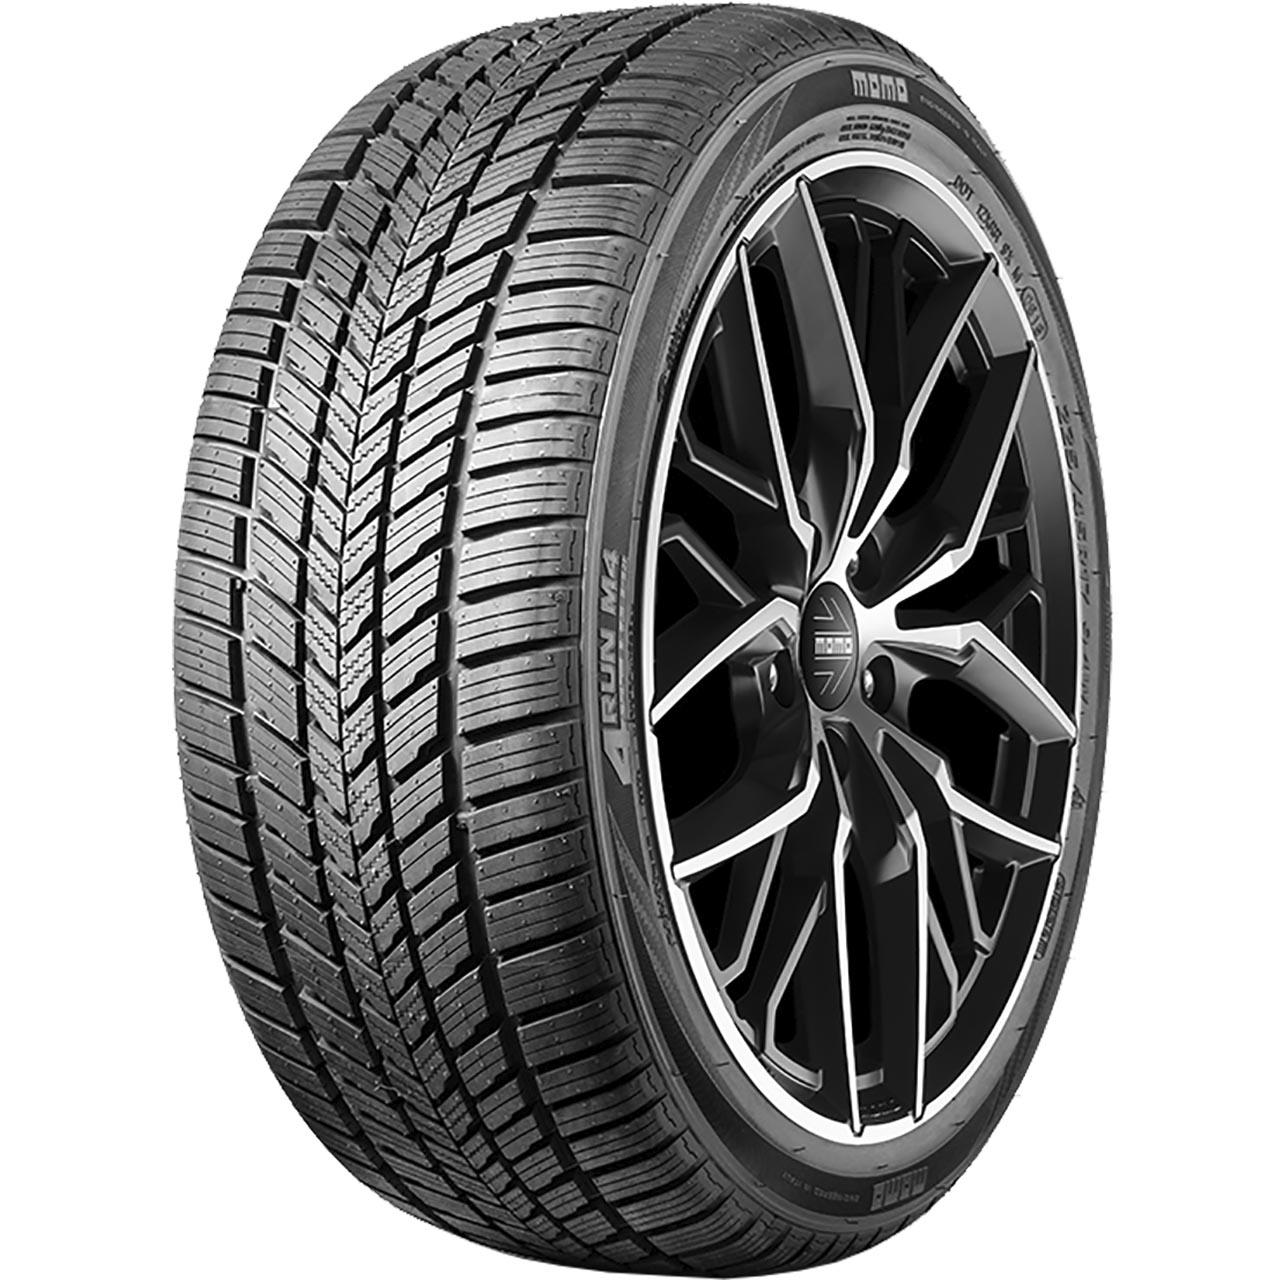 Momo Tire M 4 Four Season 225/60R17 103V XL